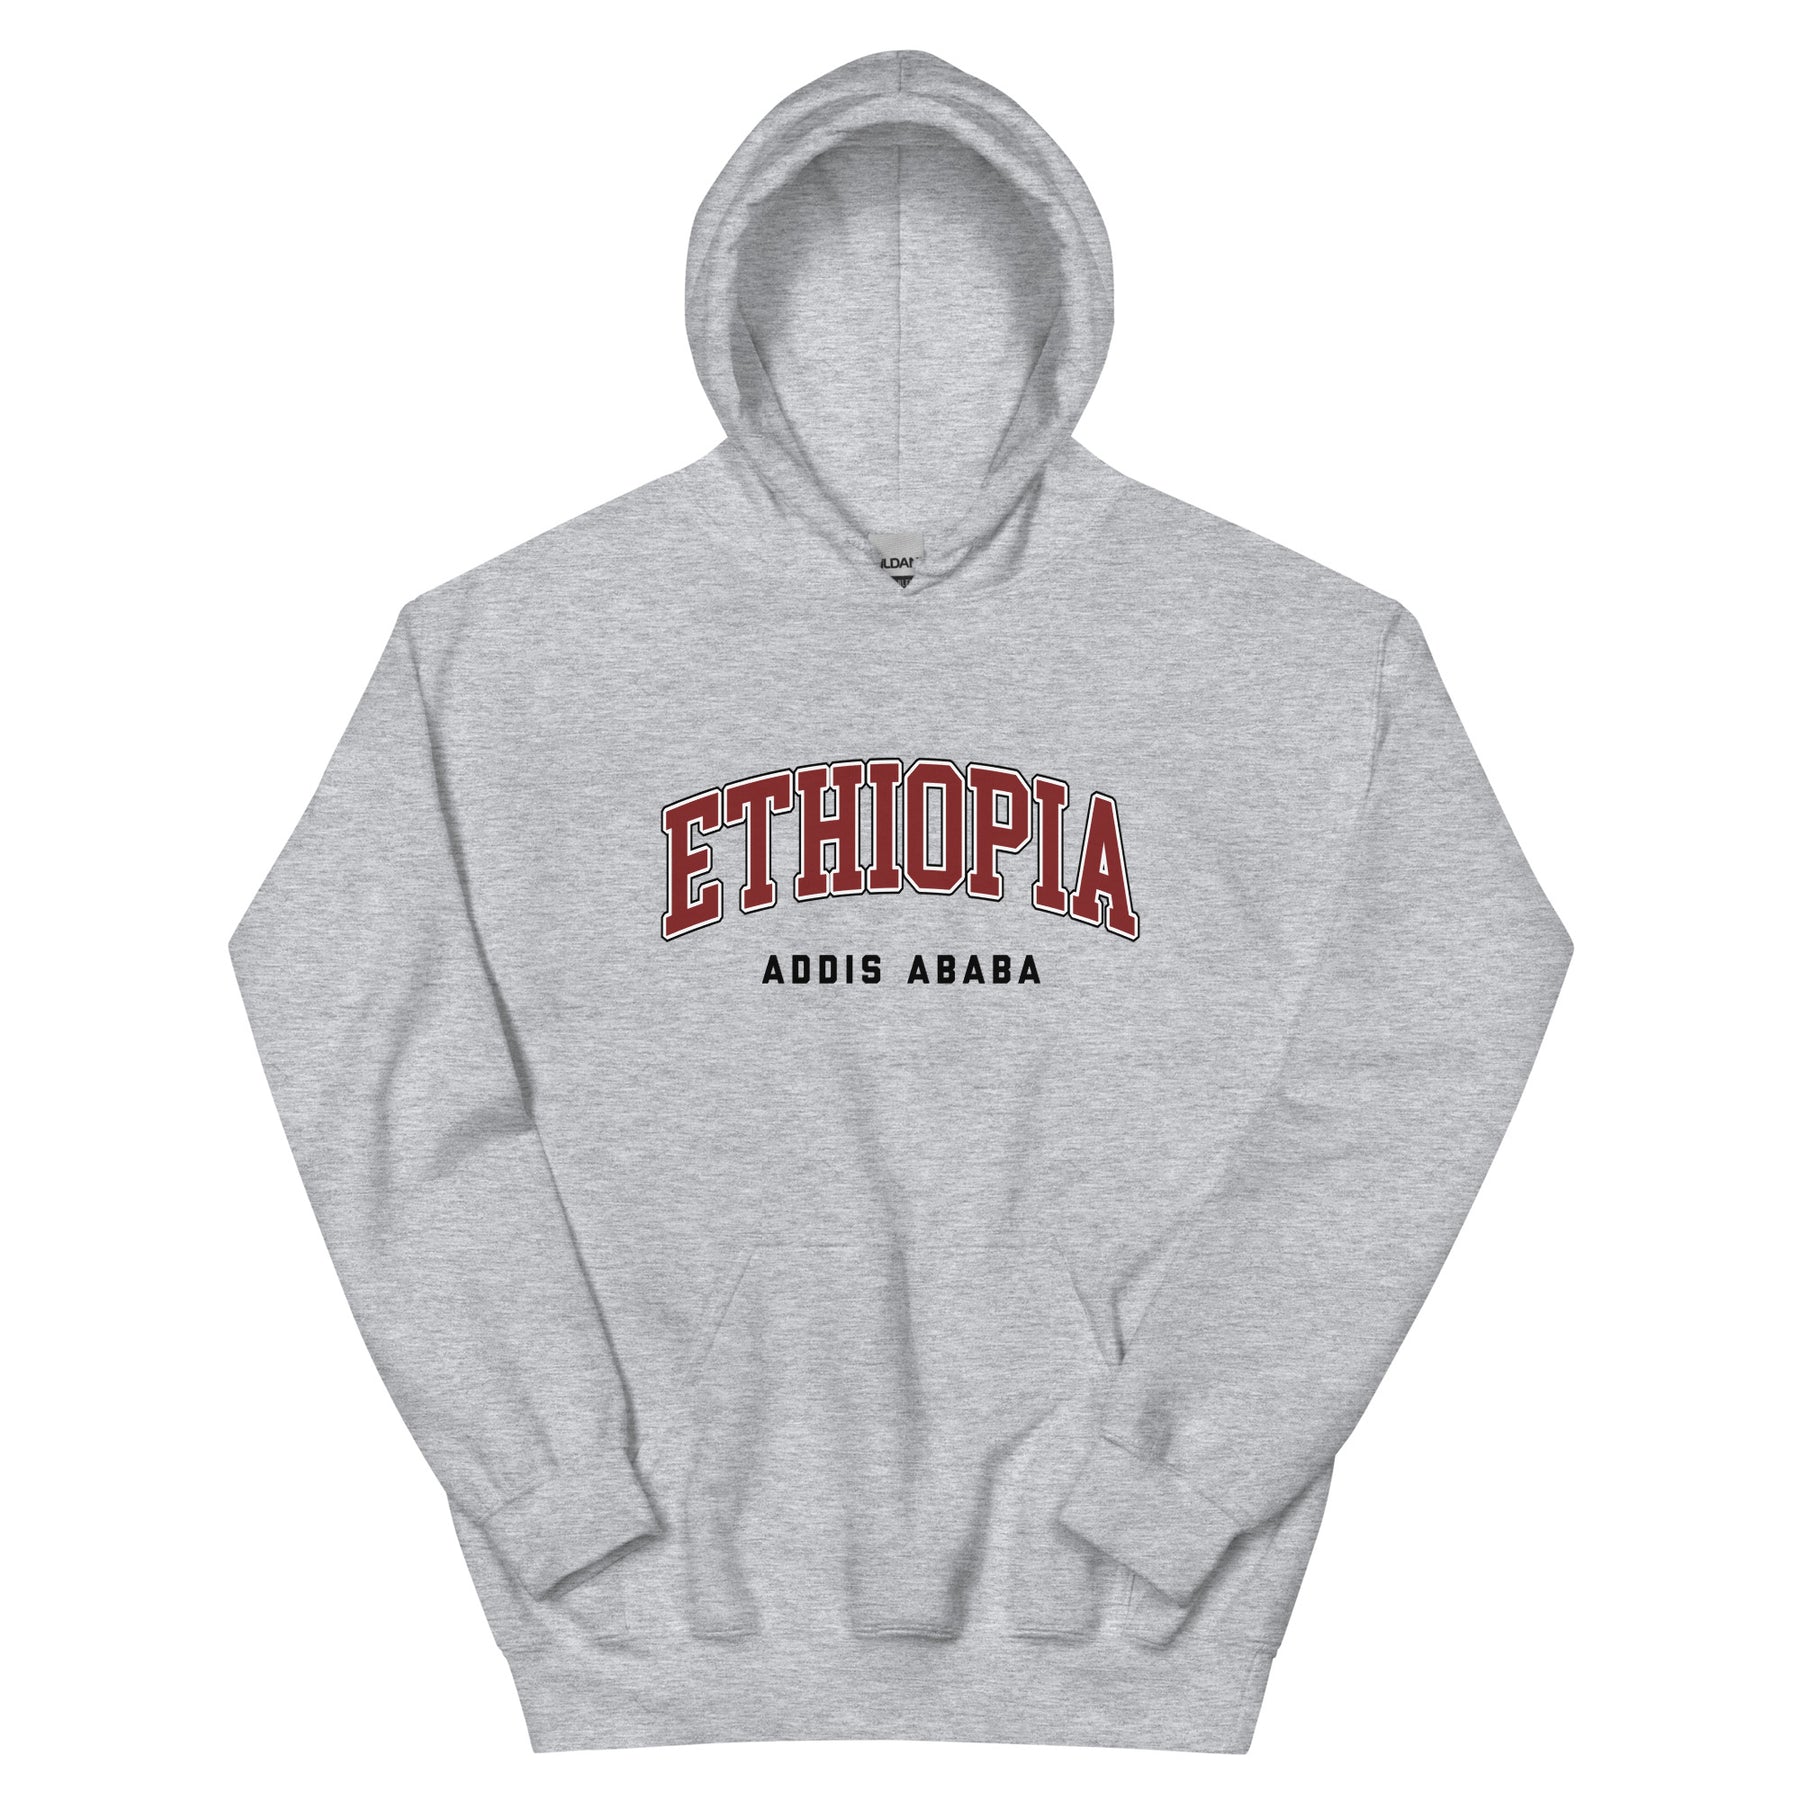 Addis Ababa, Ethiopia - Hoodie